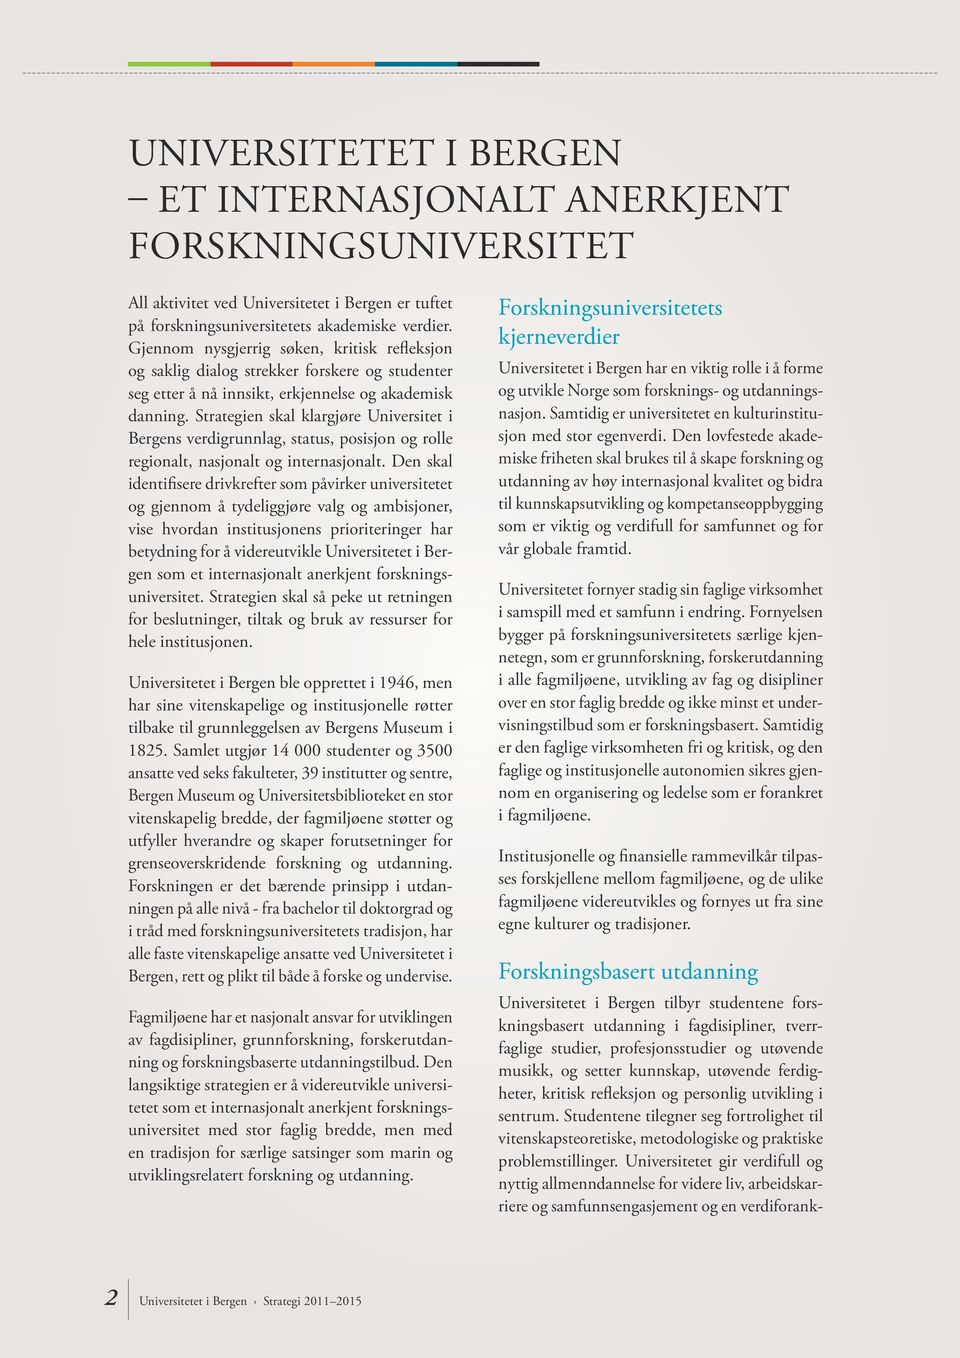 Strategien skal klargjøre Universitet i Bergens verdigrunnlag, status, posisjon og rolle regionalt, nasjonalt og internasjonalt.